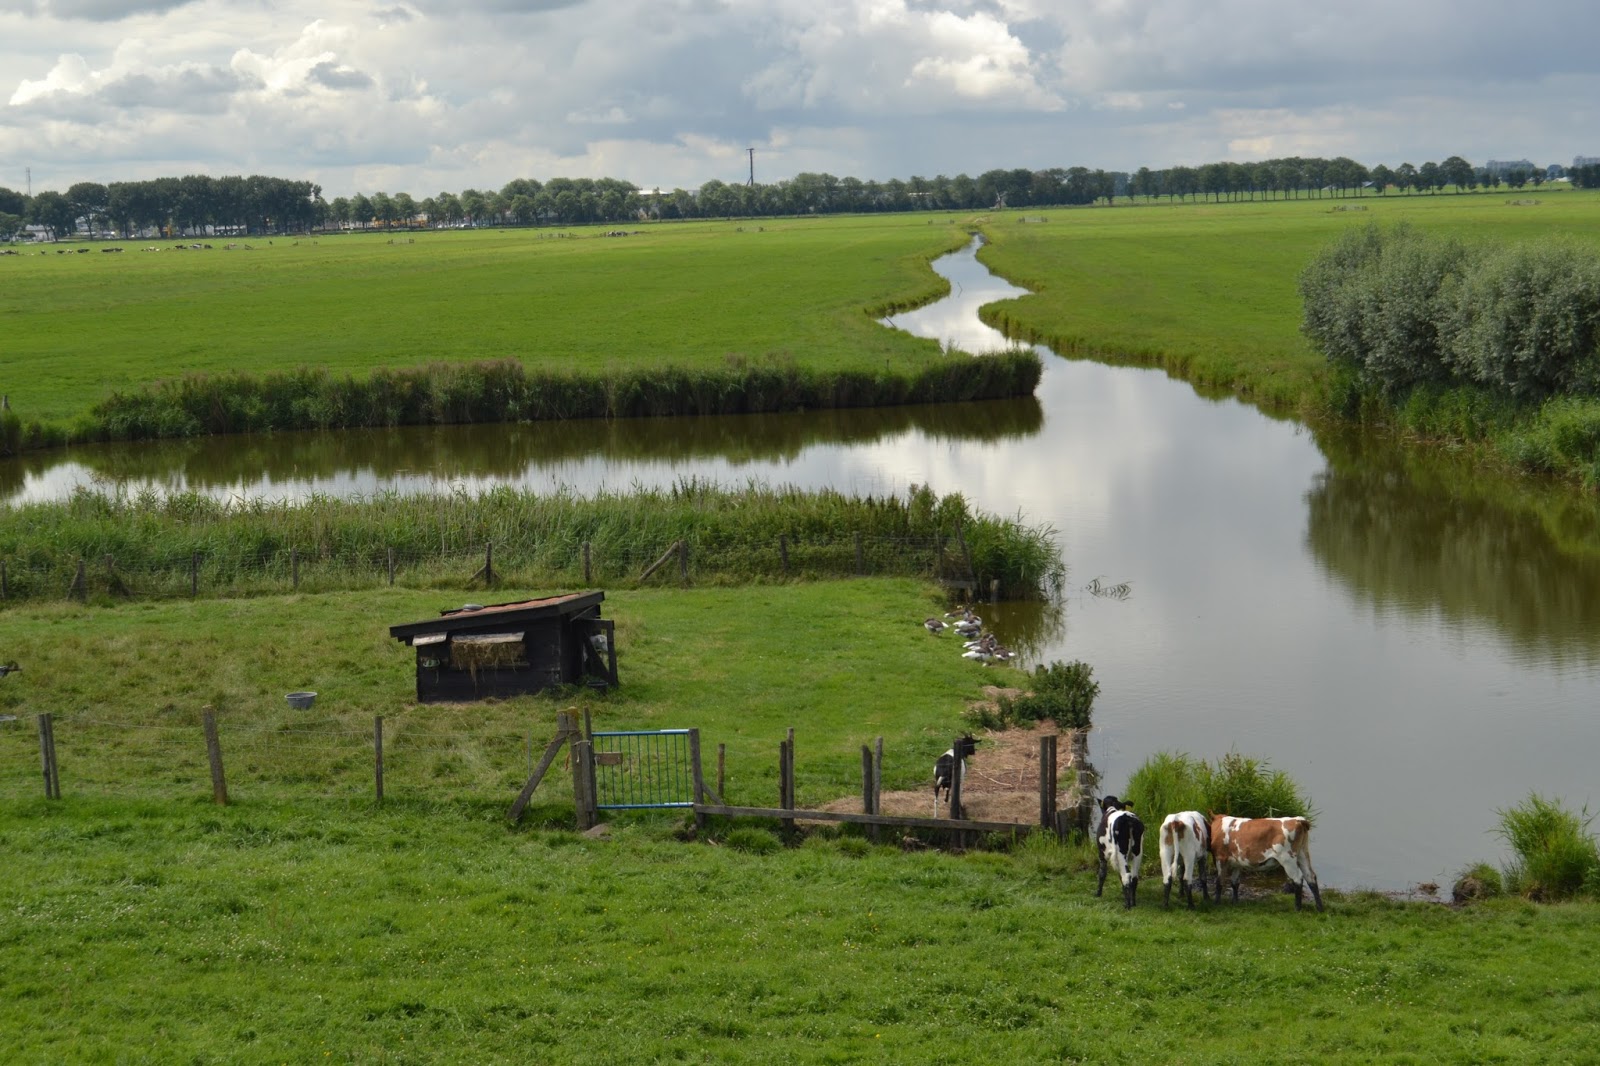 Waterland - 10 días acampando por Bélgica y Holanda (2)